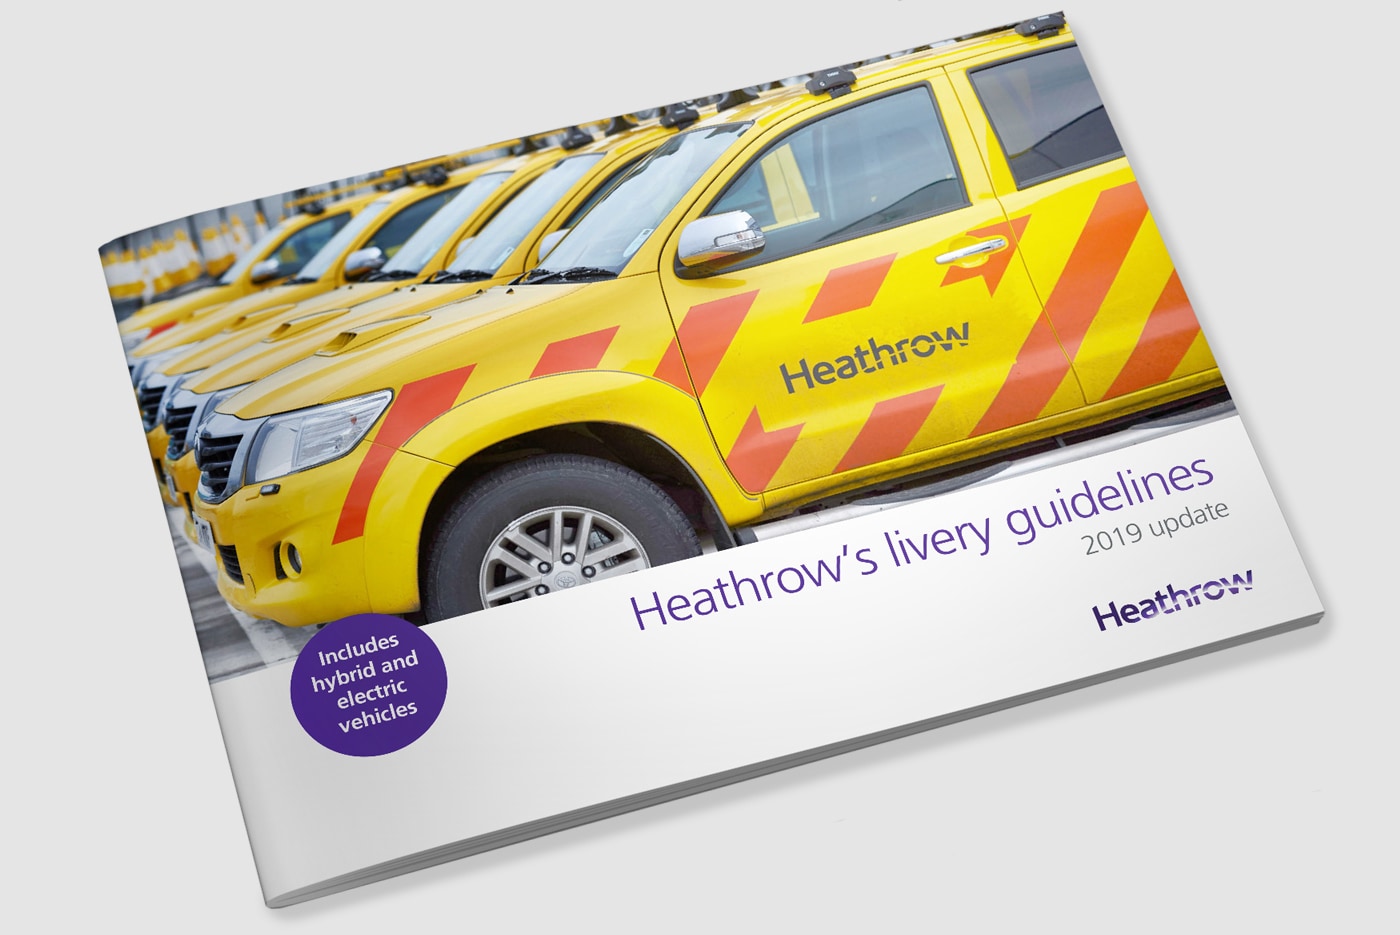 Heathrow’s vehicle livery